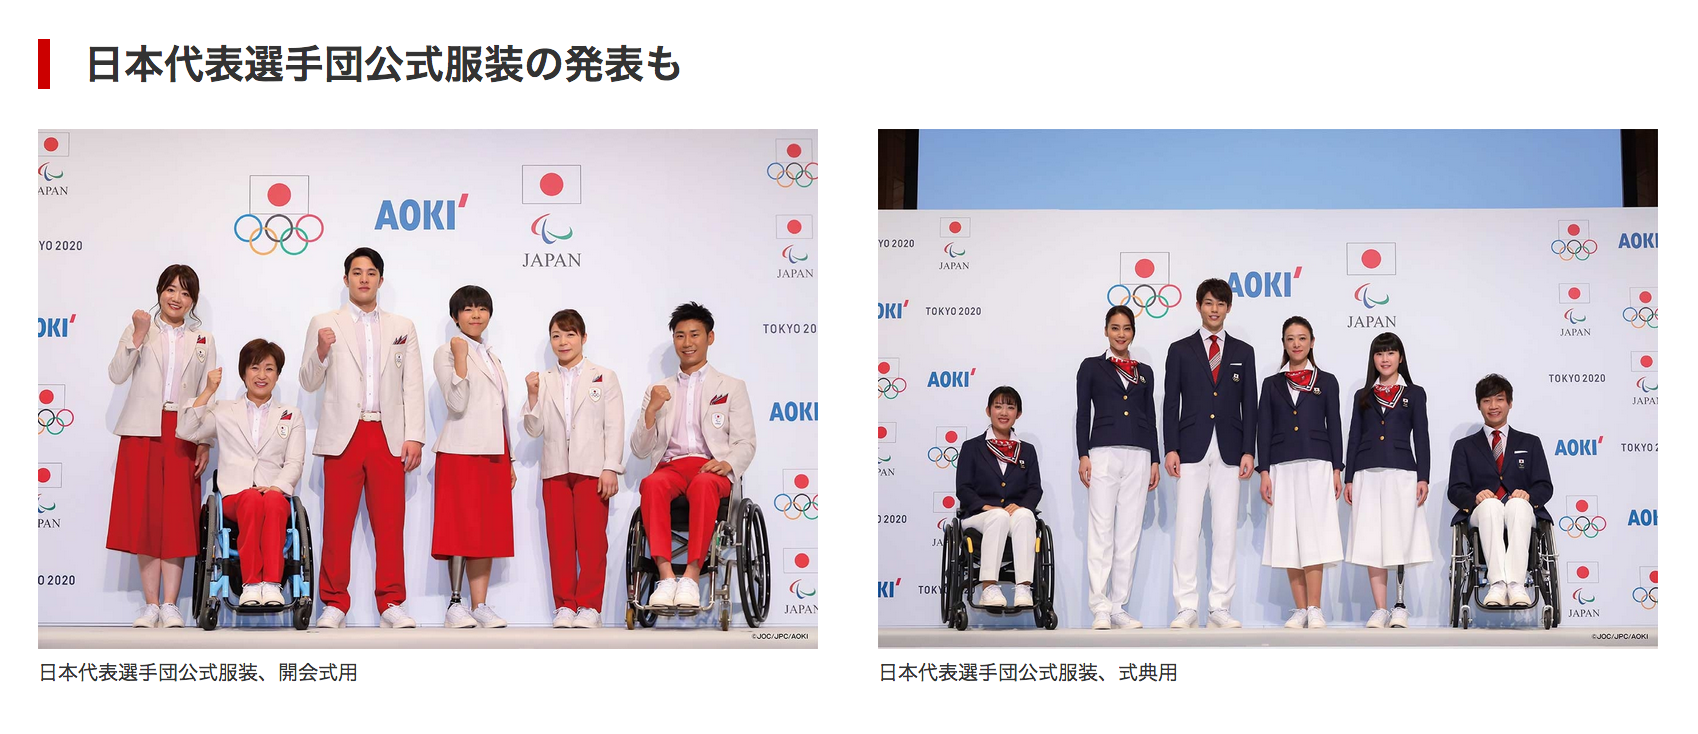 東京五輪ユニフォーム発表、やっぱりモヤモヤするいくつかの理由